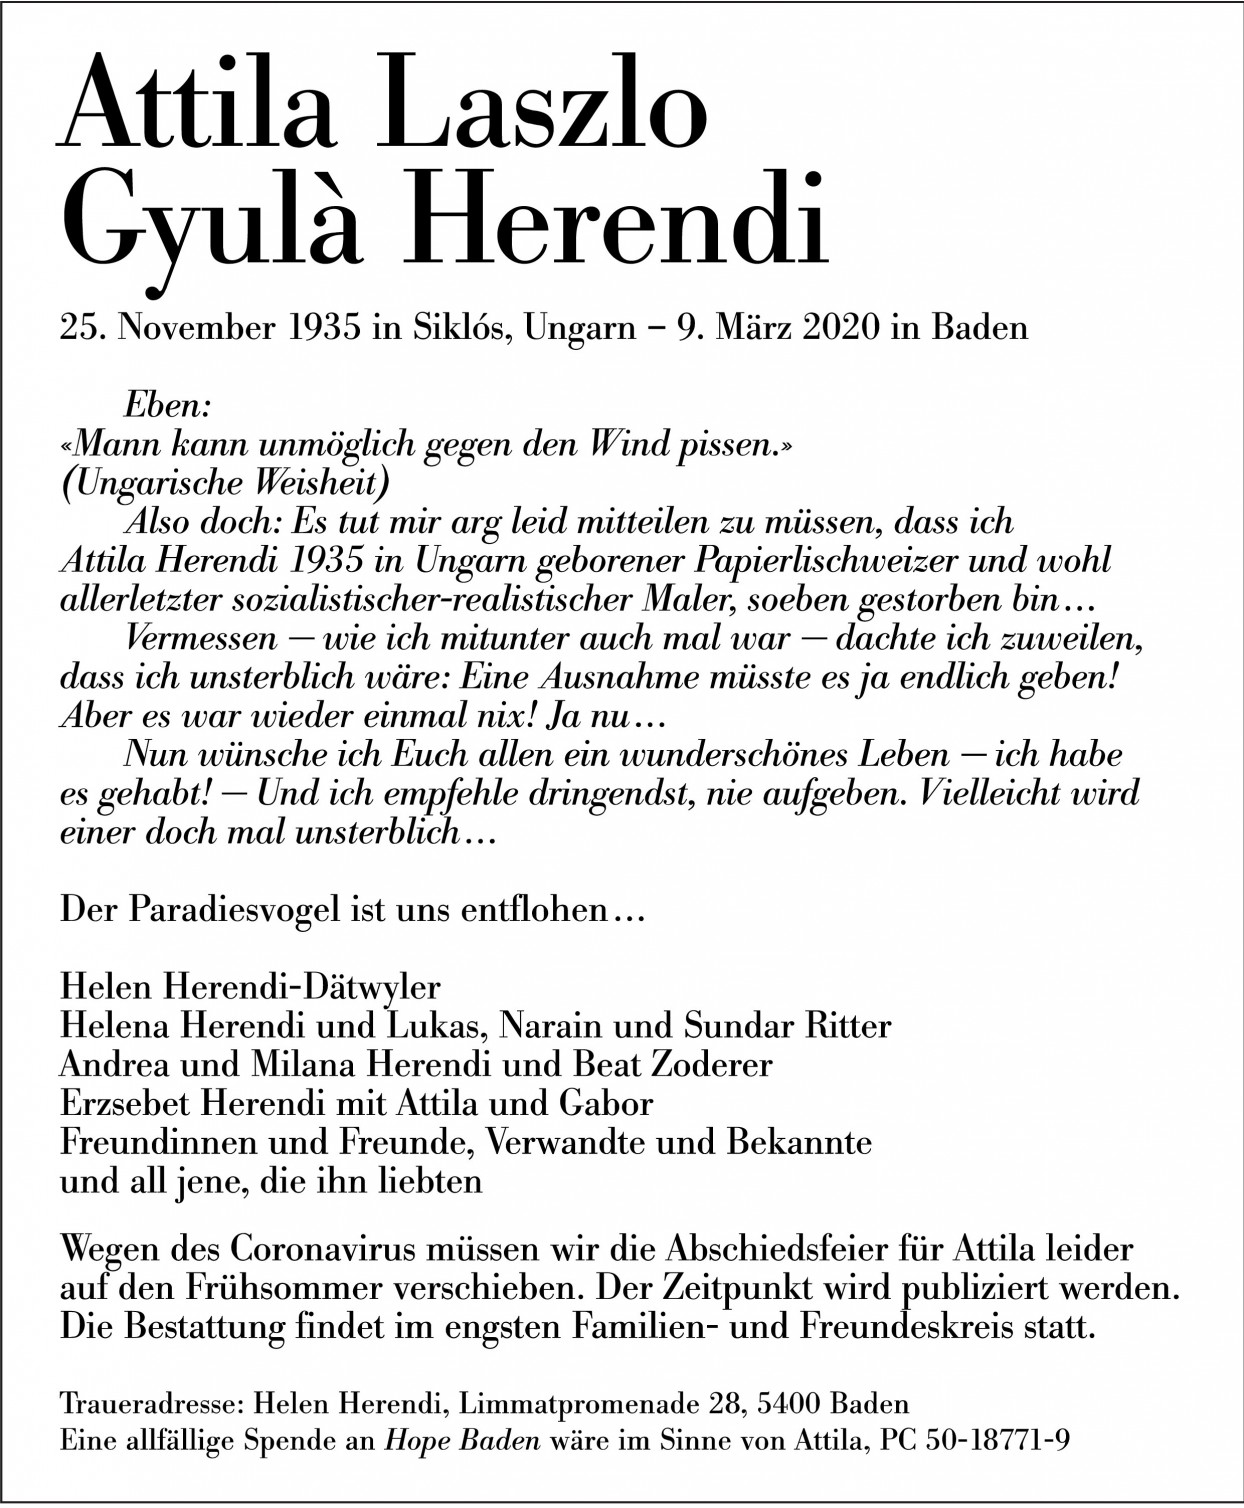 Attila Laszlo Gyulà Herendi